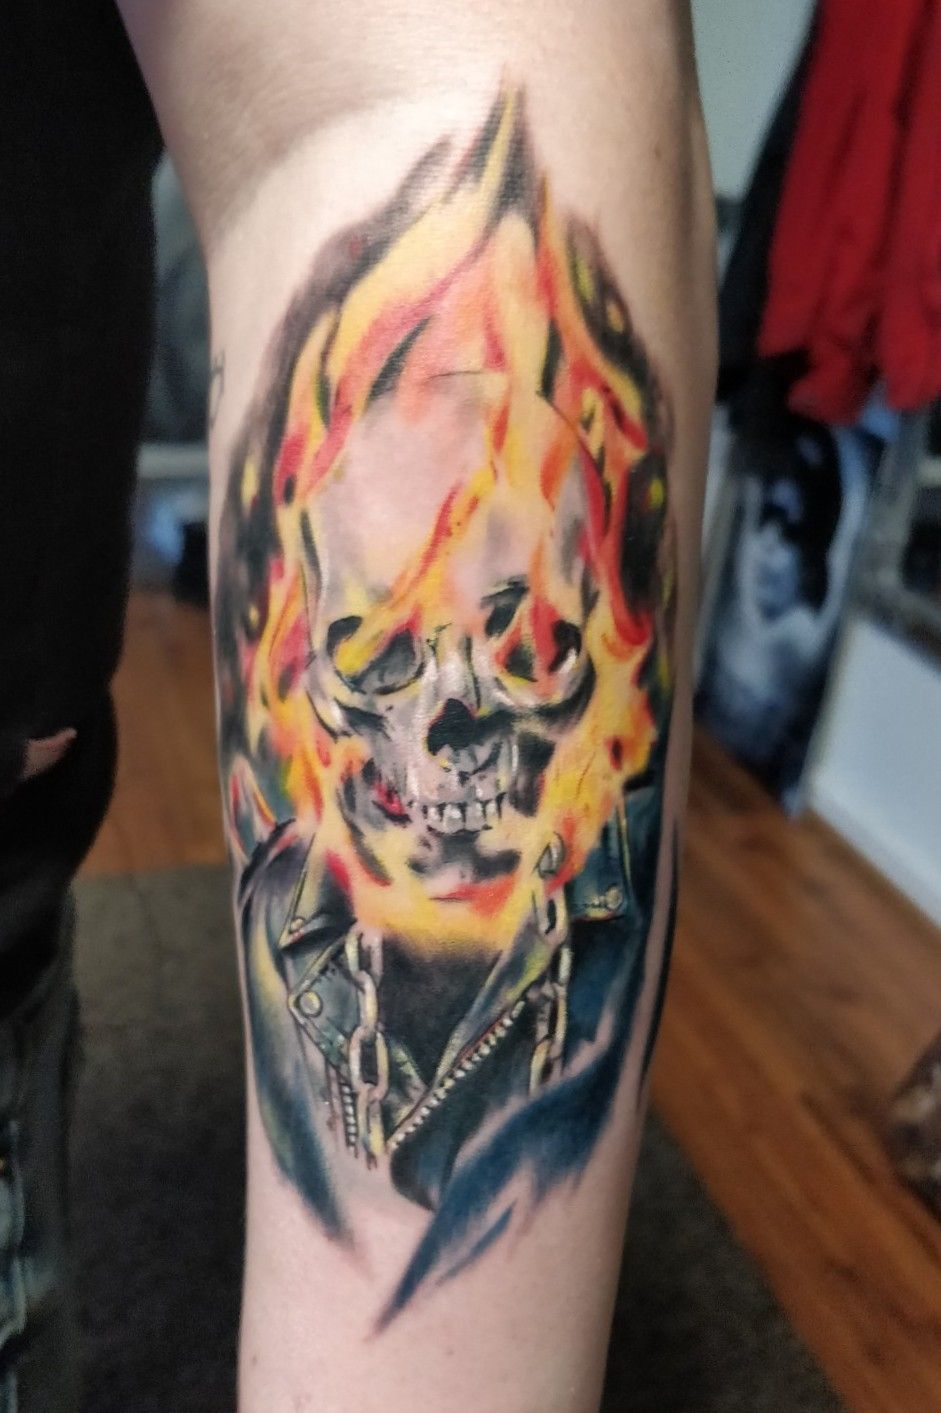 Ghost rider tattoo by tpenttil on DeviantArt